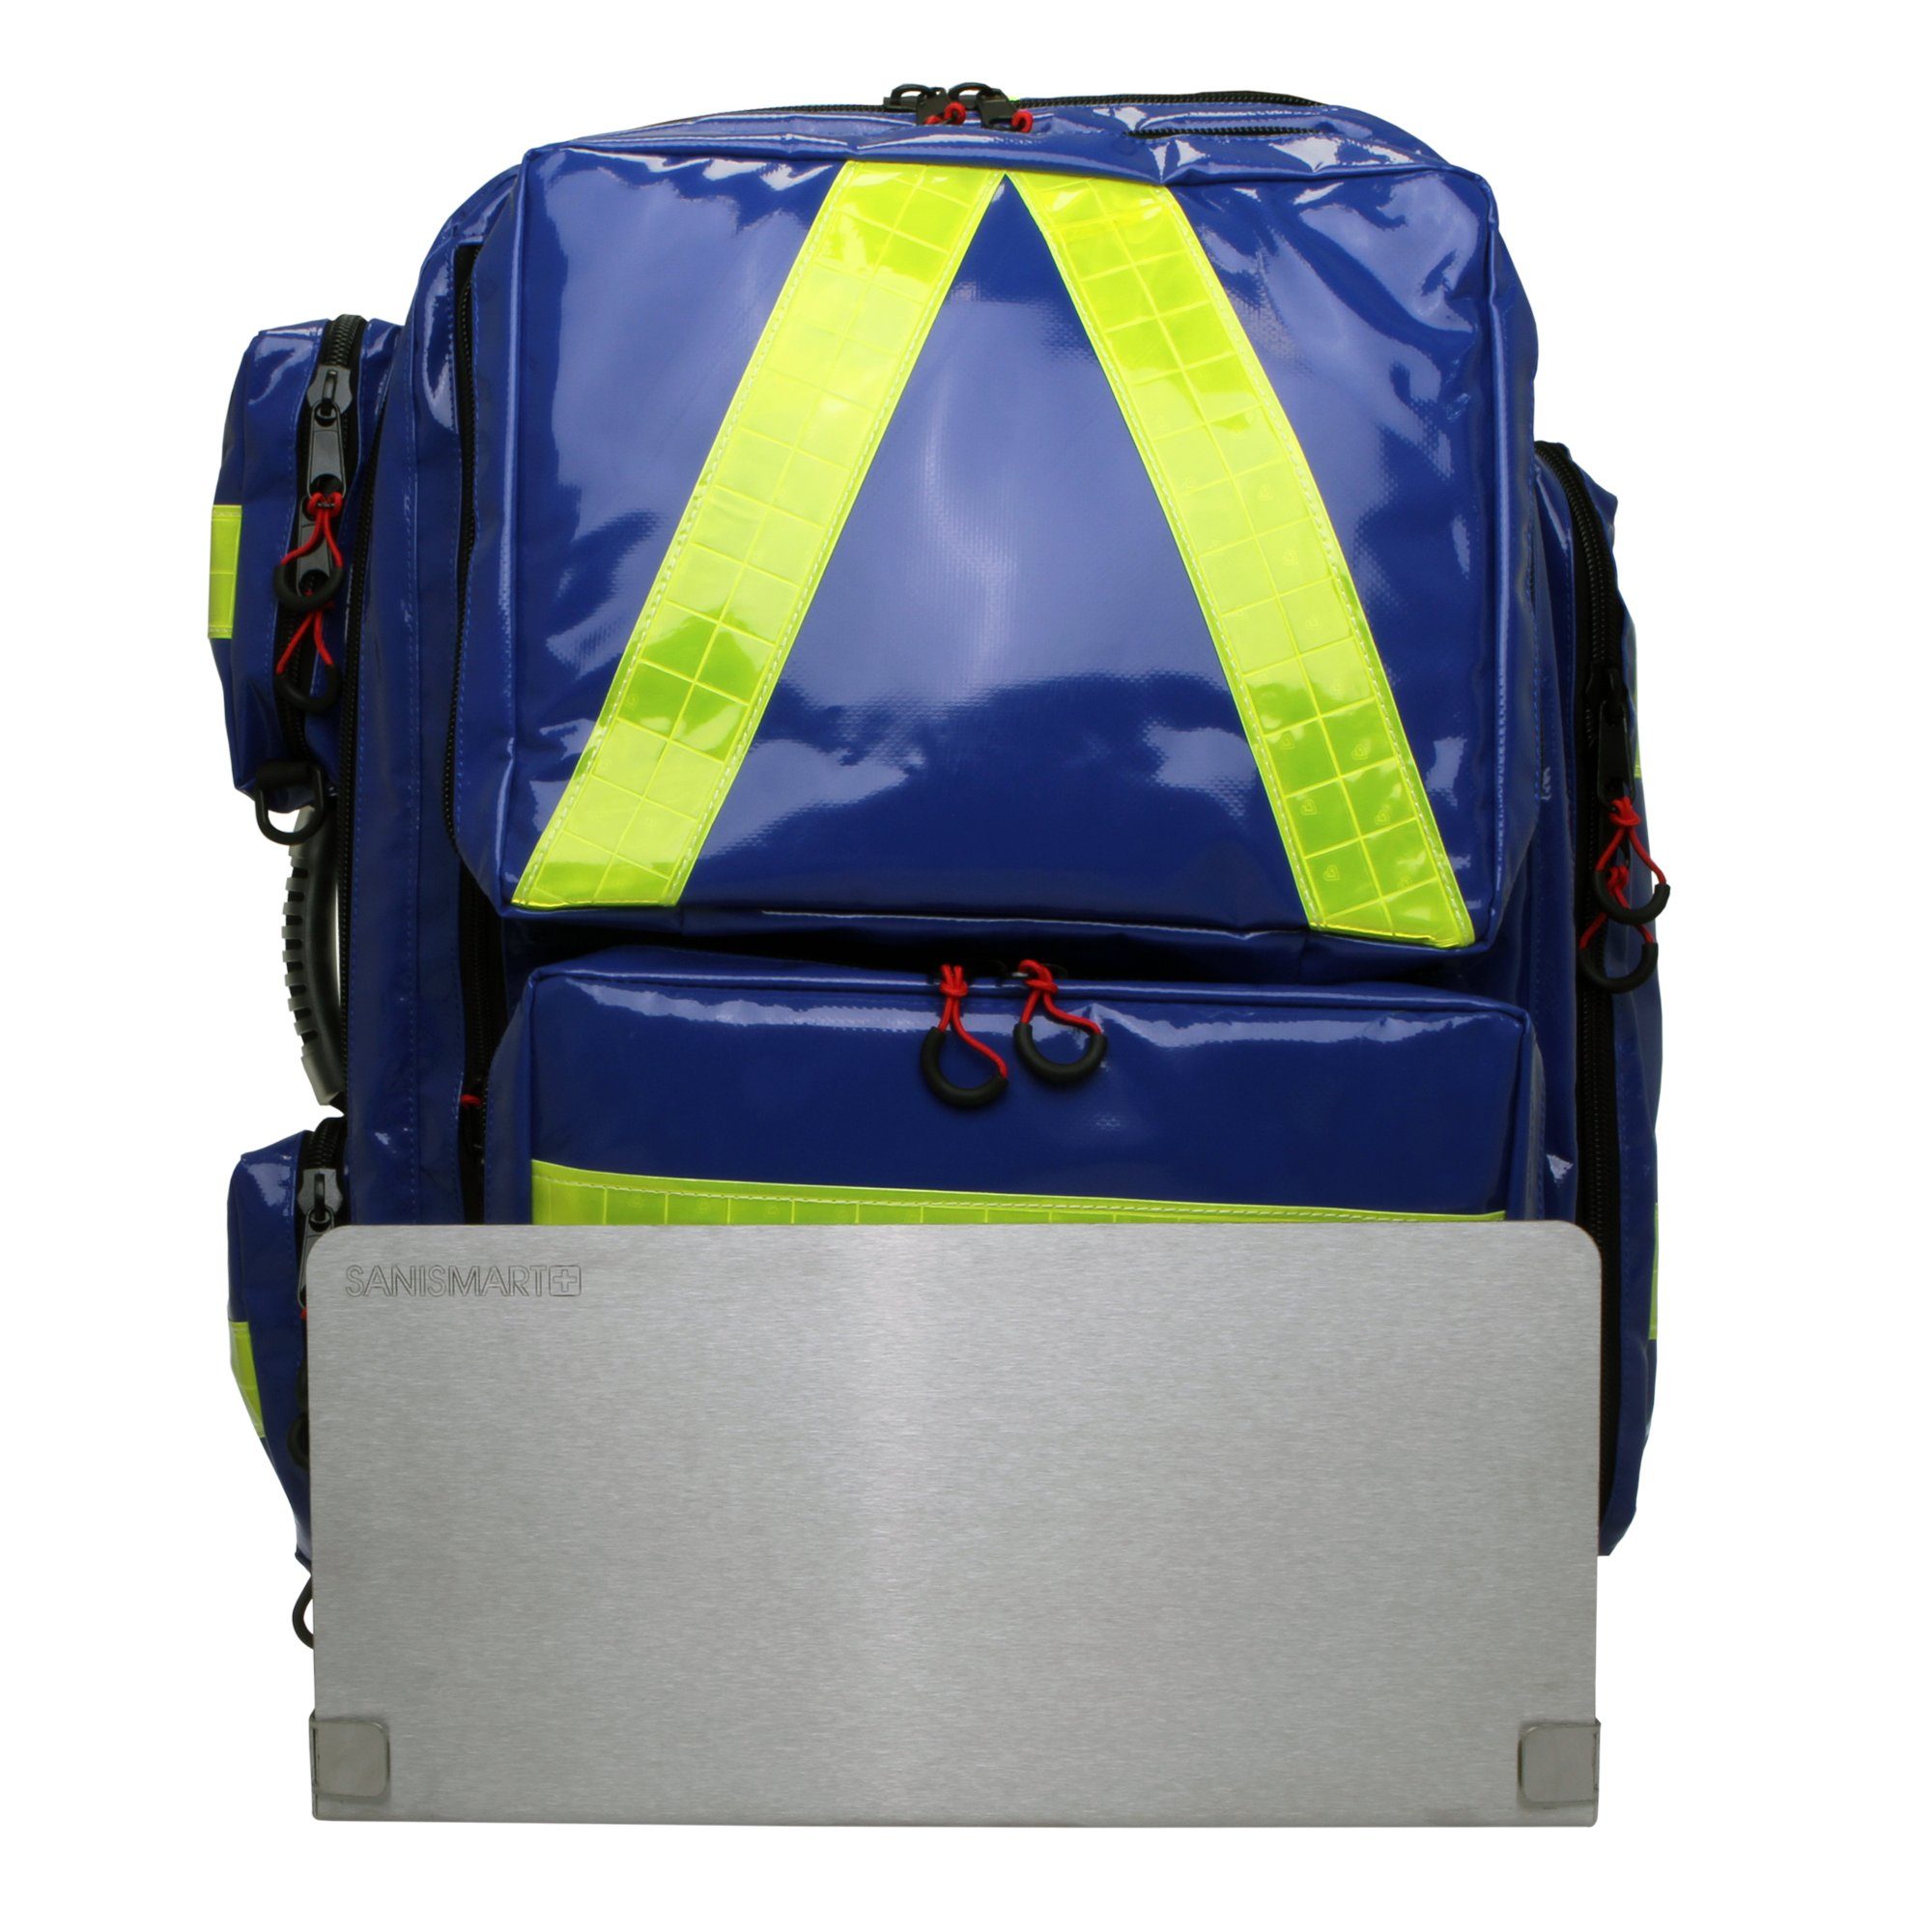 SANISMART Arzttasche Wandhalterung für Notfallrucksäcke mit Notfallrucksack Medicus XL Blau Plane